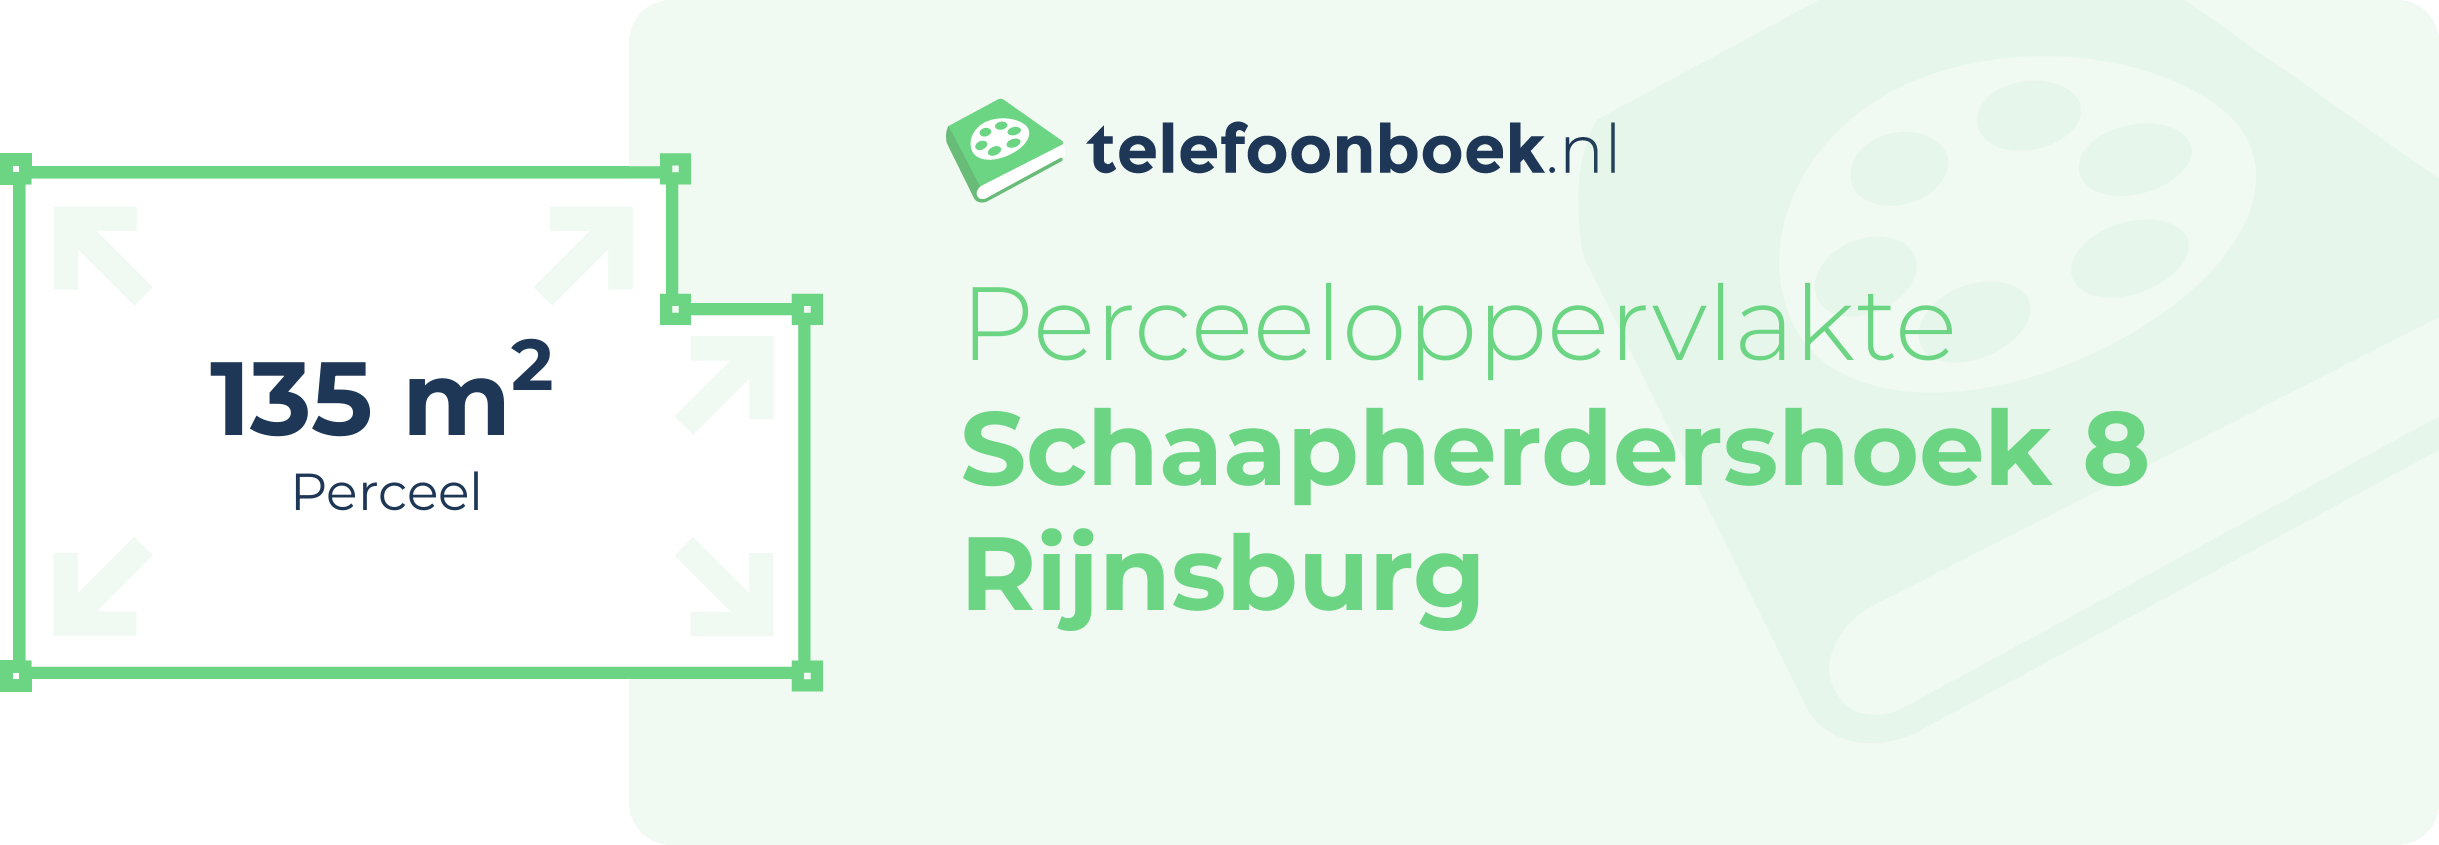 Perceeloppervlakte Schaapherdershoek 8 Rijnsburg